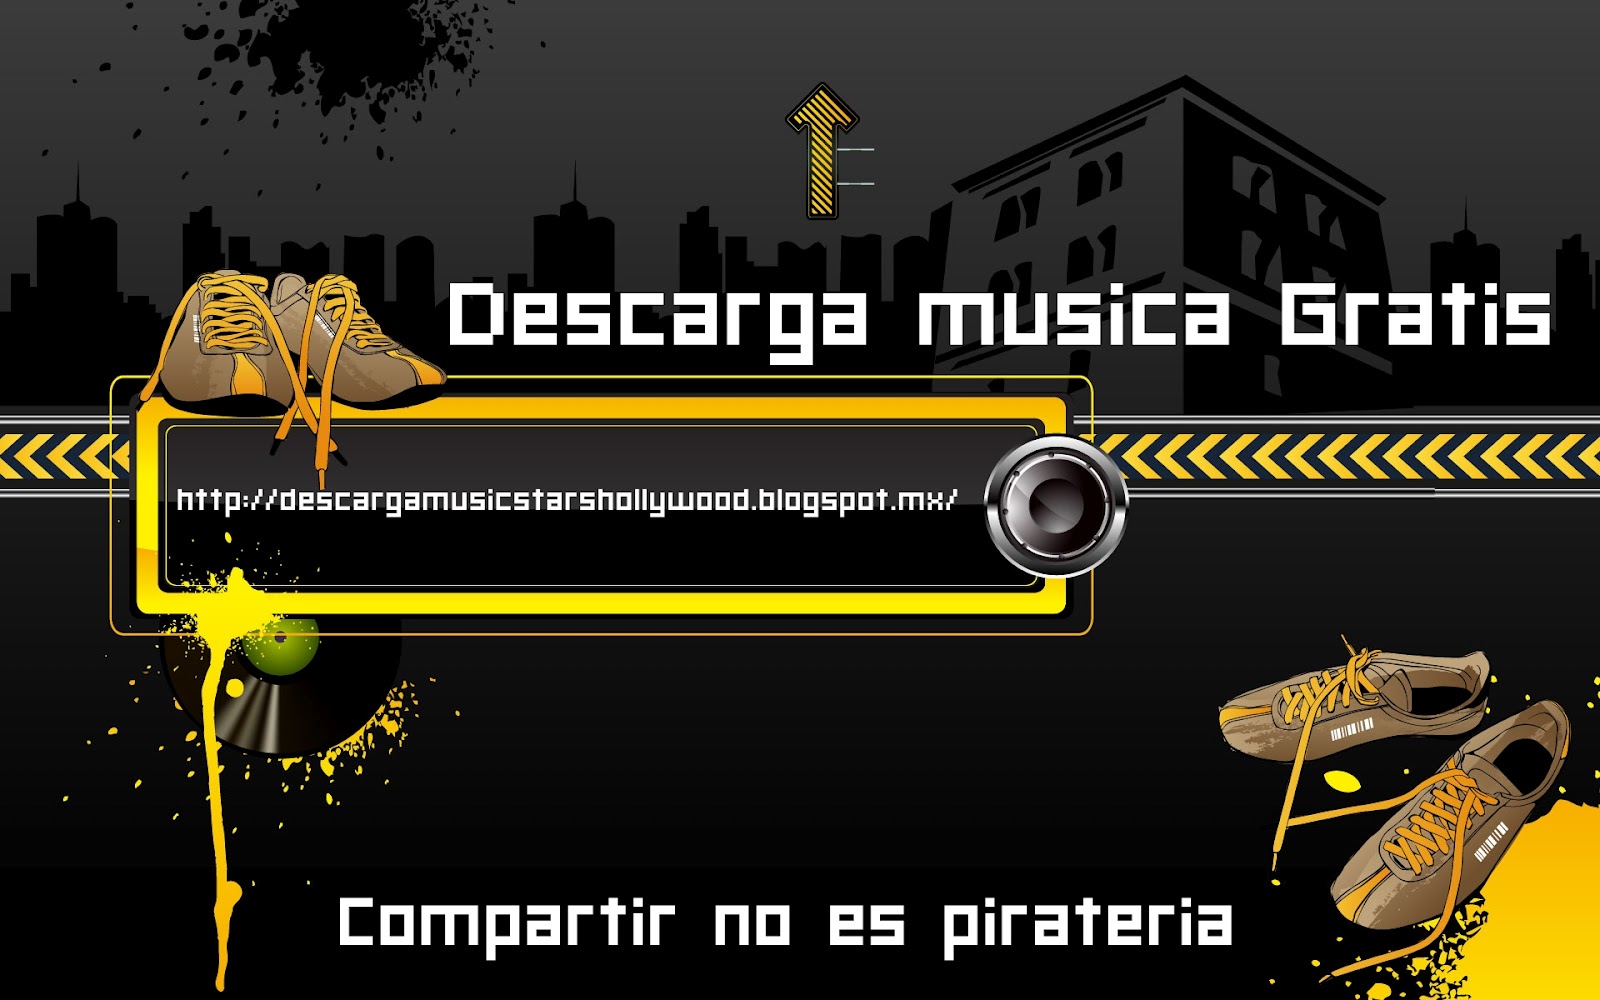 PAGINAS PARA DESCARGAR MUSICA GRATIS MP3 SIN REGISTRARSE 